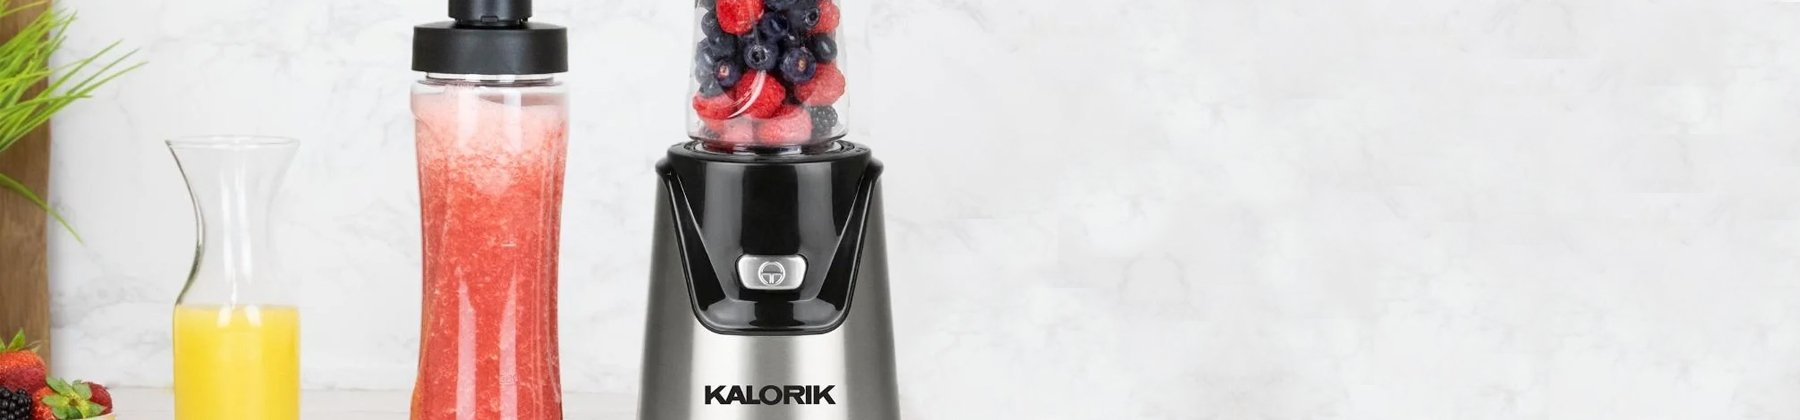 Photo of Kalorik personal blender with berries.